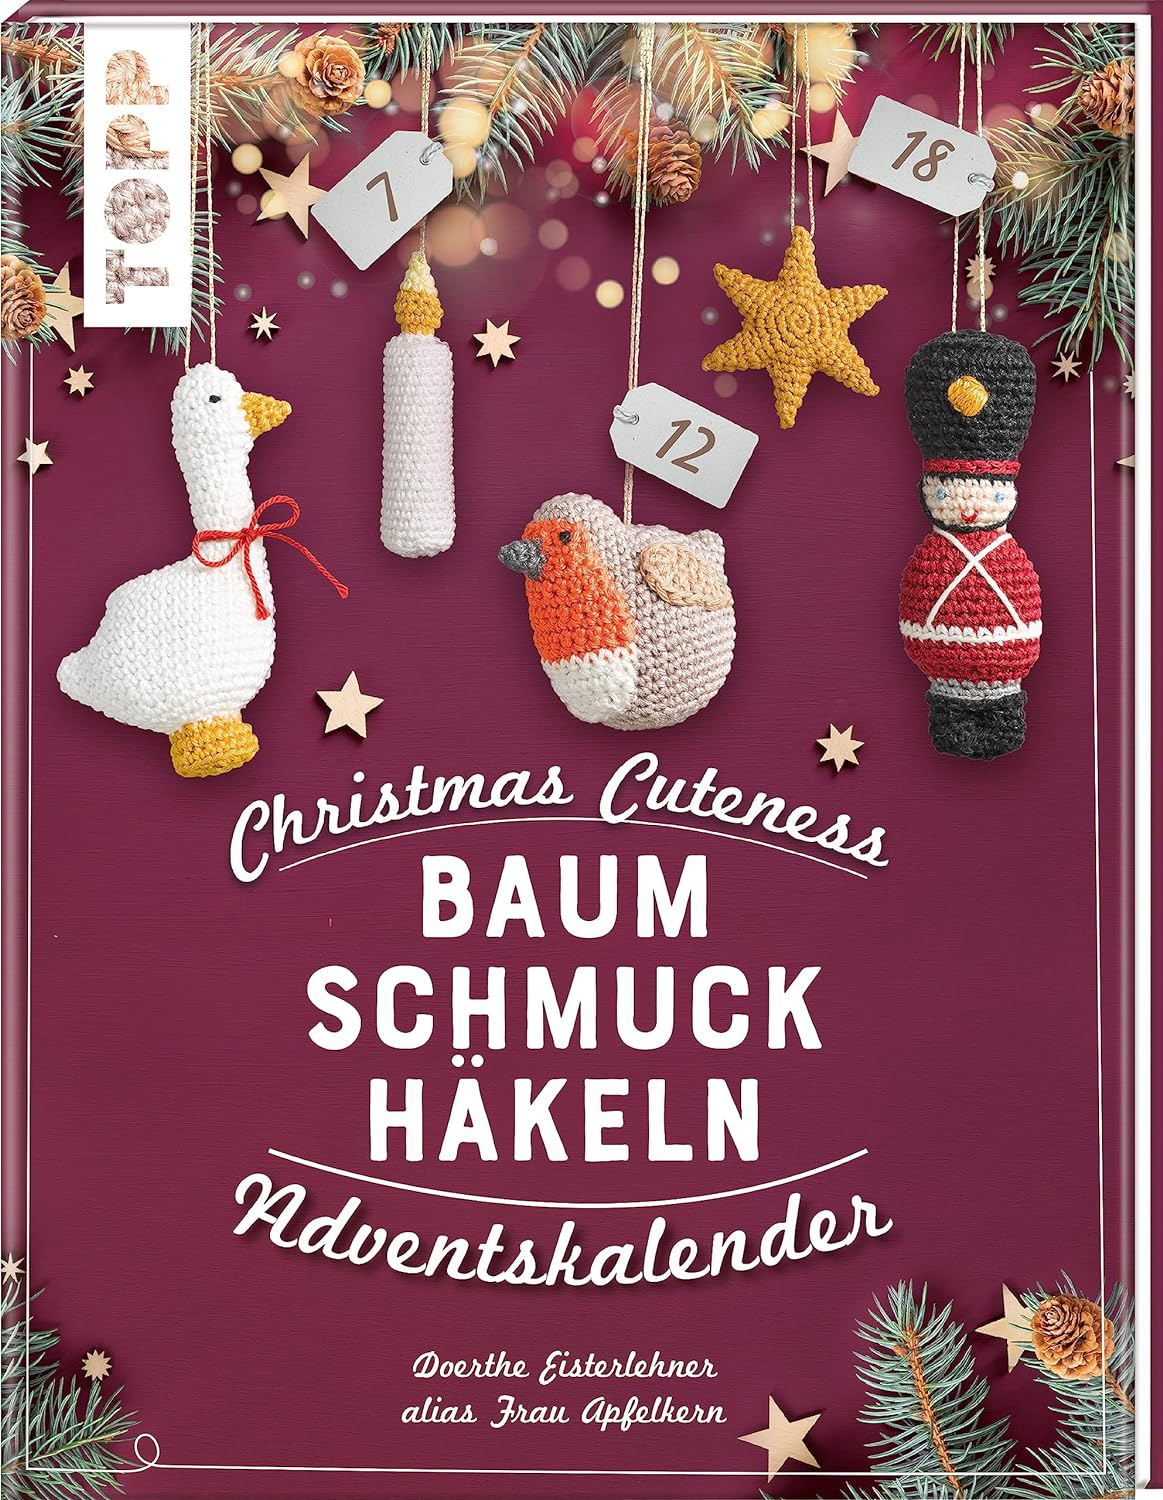 Christmas Cuteness. Baumschmuck häkeln - Adventskalender: 24x Türchen öffnen. 24 verschlossene Seiten zum Auftrennen